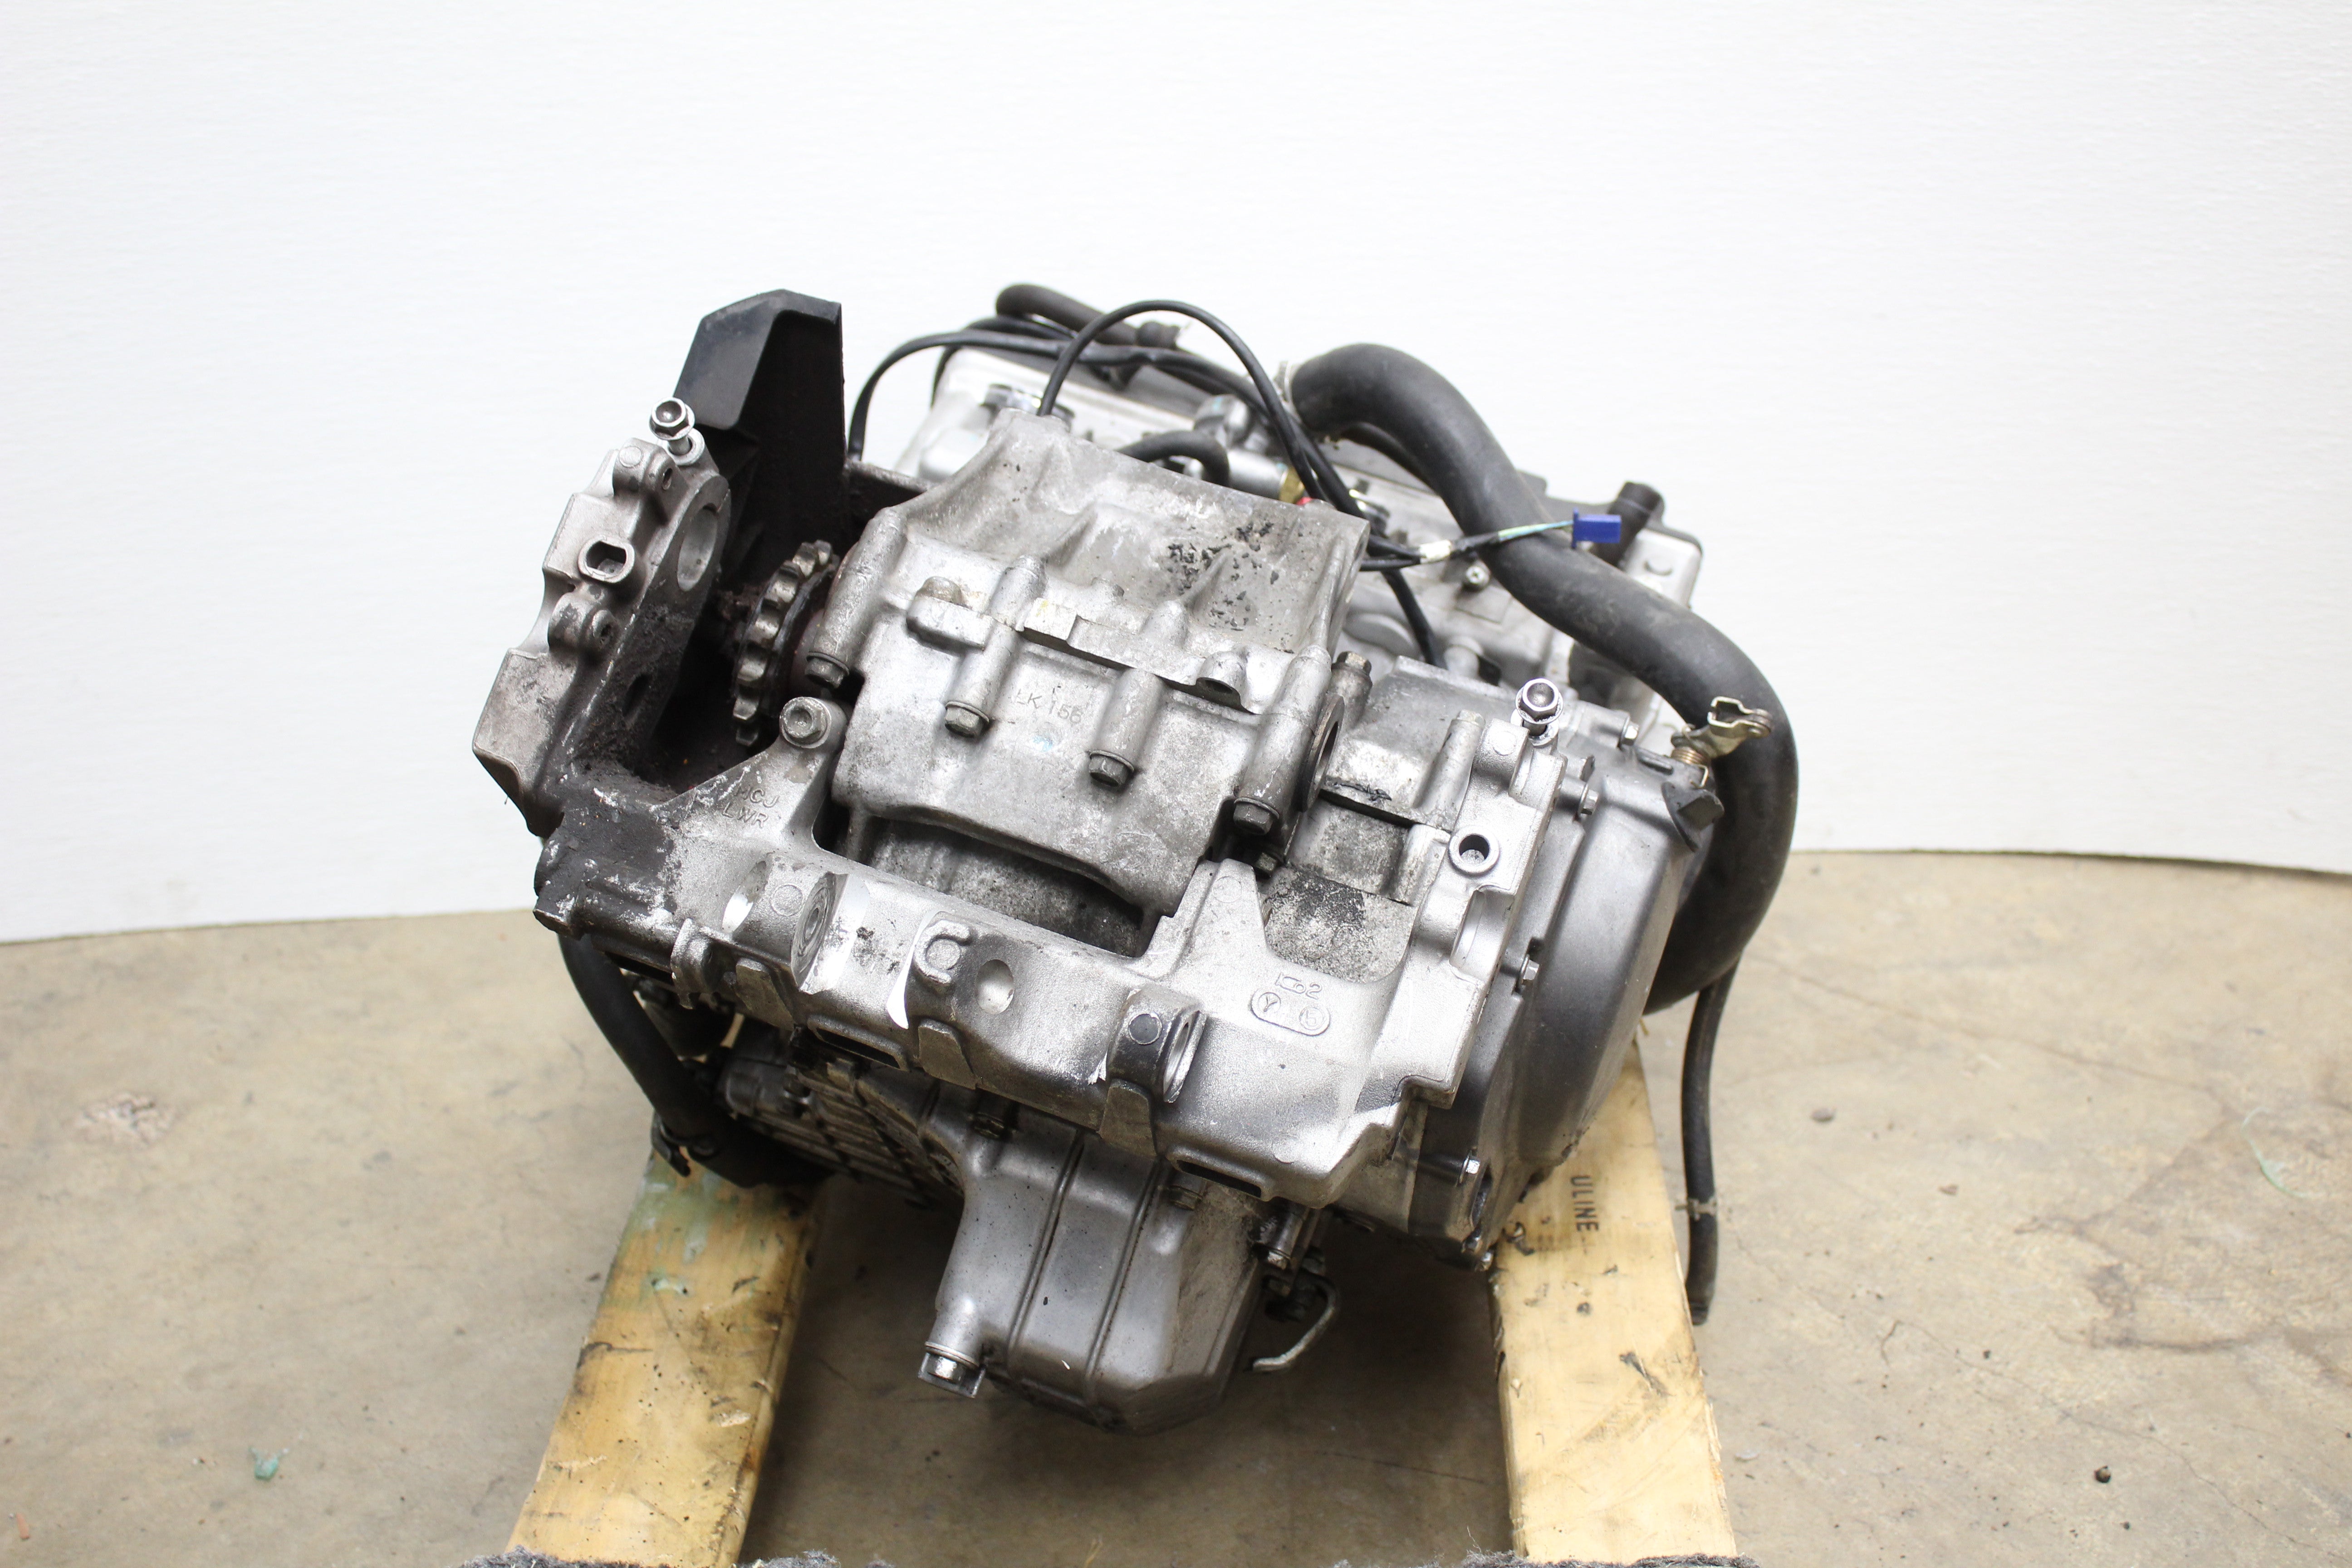 Honda OEM, Engine Motor Complete For Parts/Rebuild Honda CBR929RR 00-01 OEM